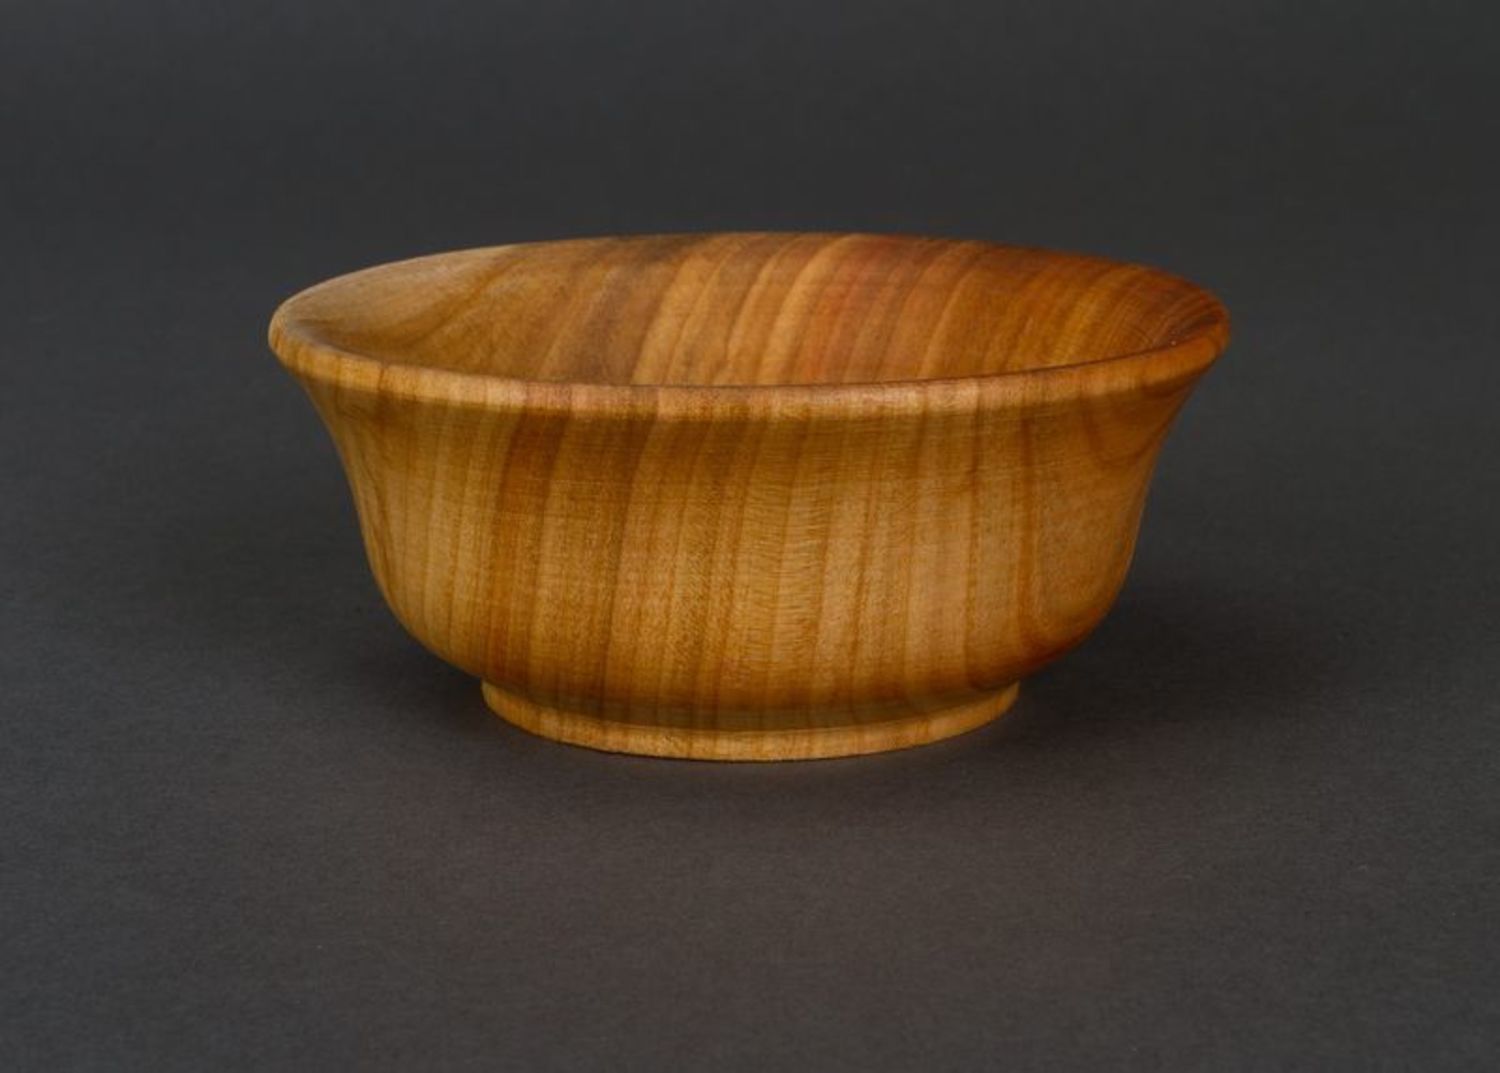 Bowl made of natural wood photo 3